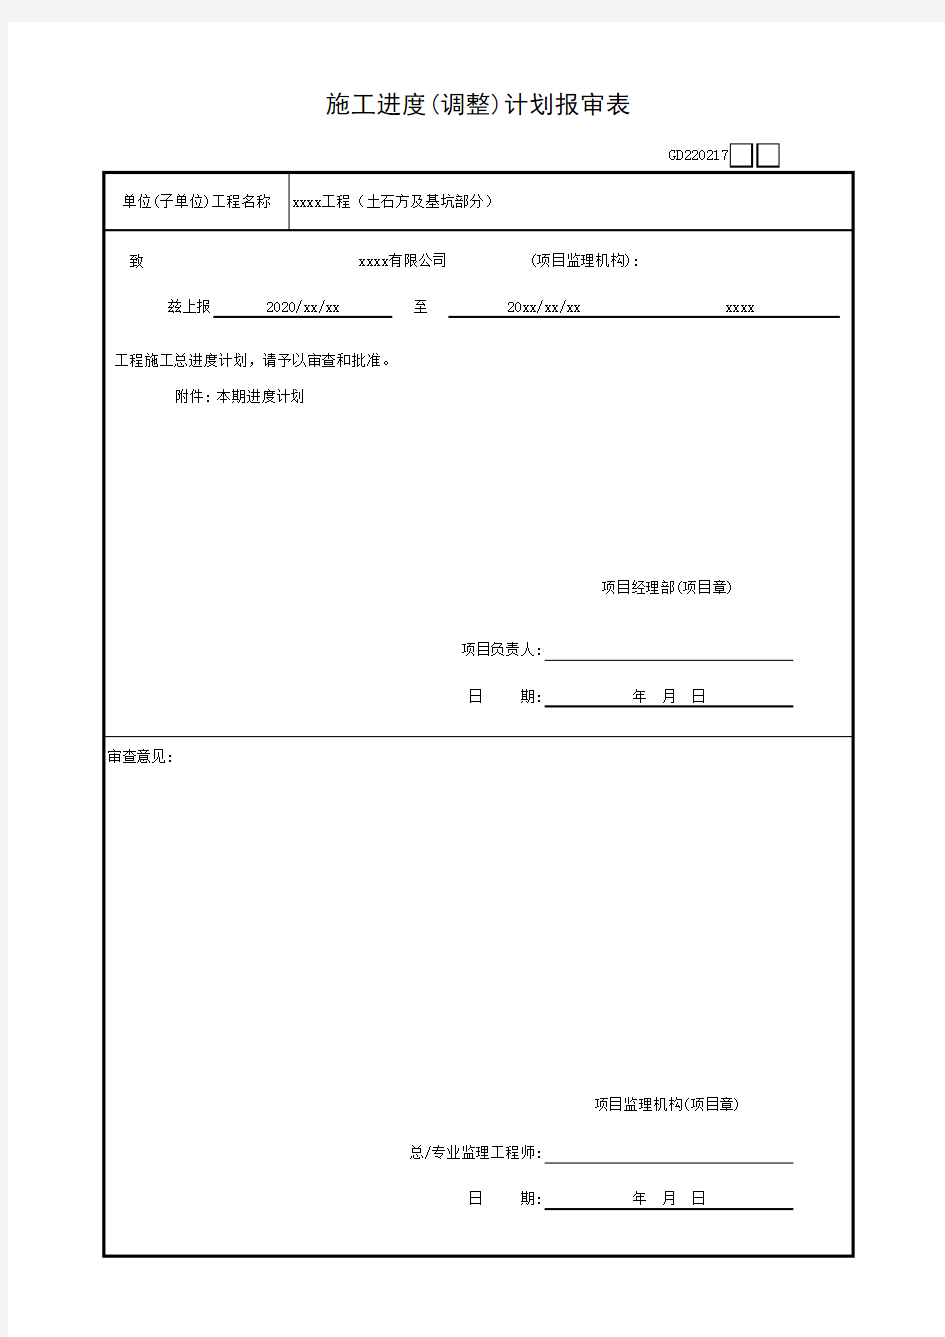 2020年广东省最新统表-施工进度(调整)计划报审表GD220217